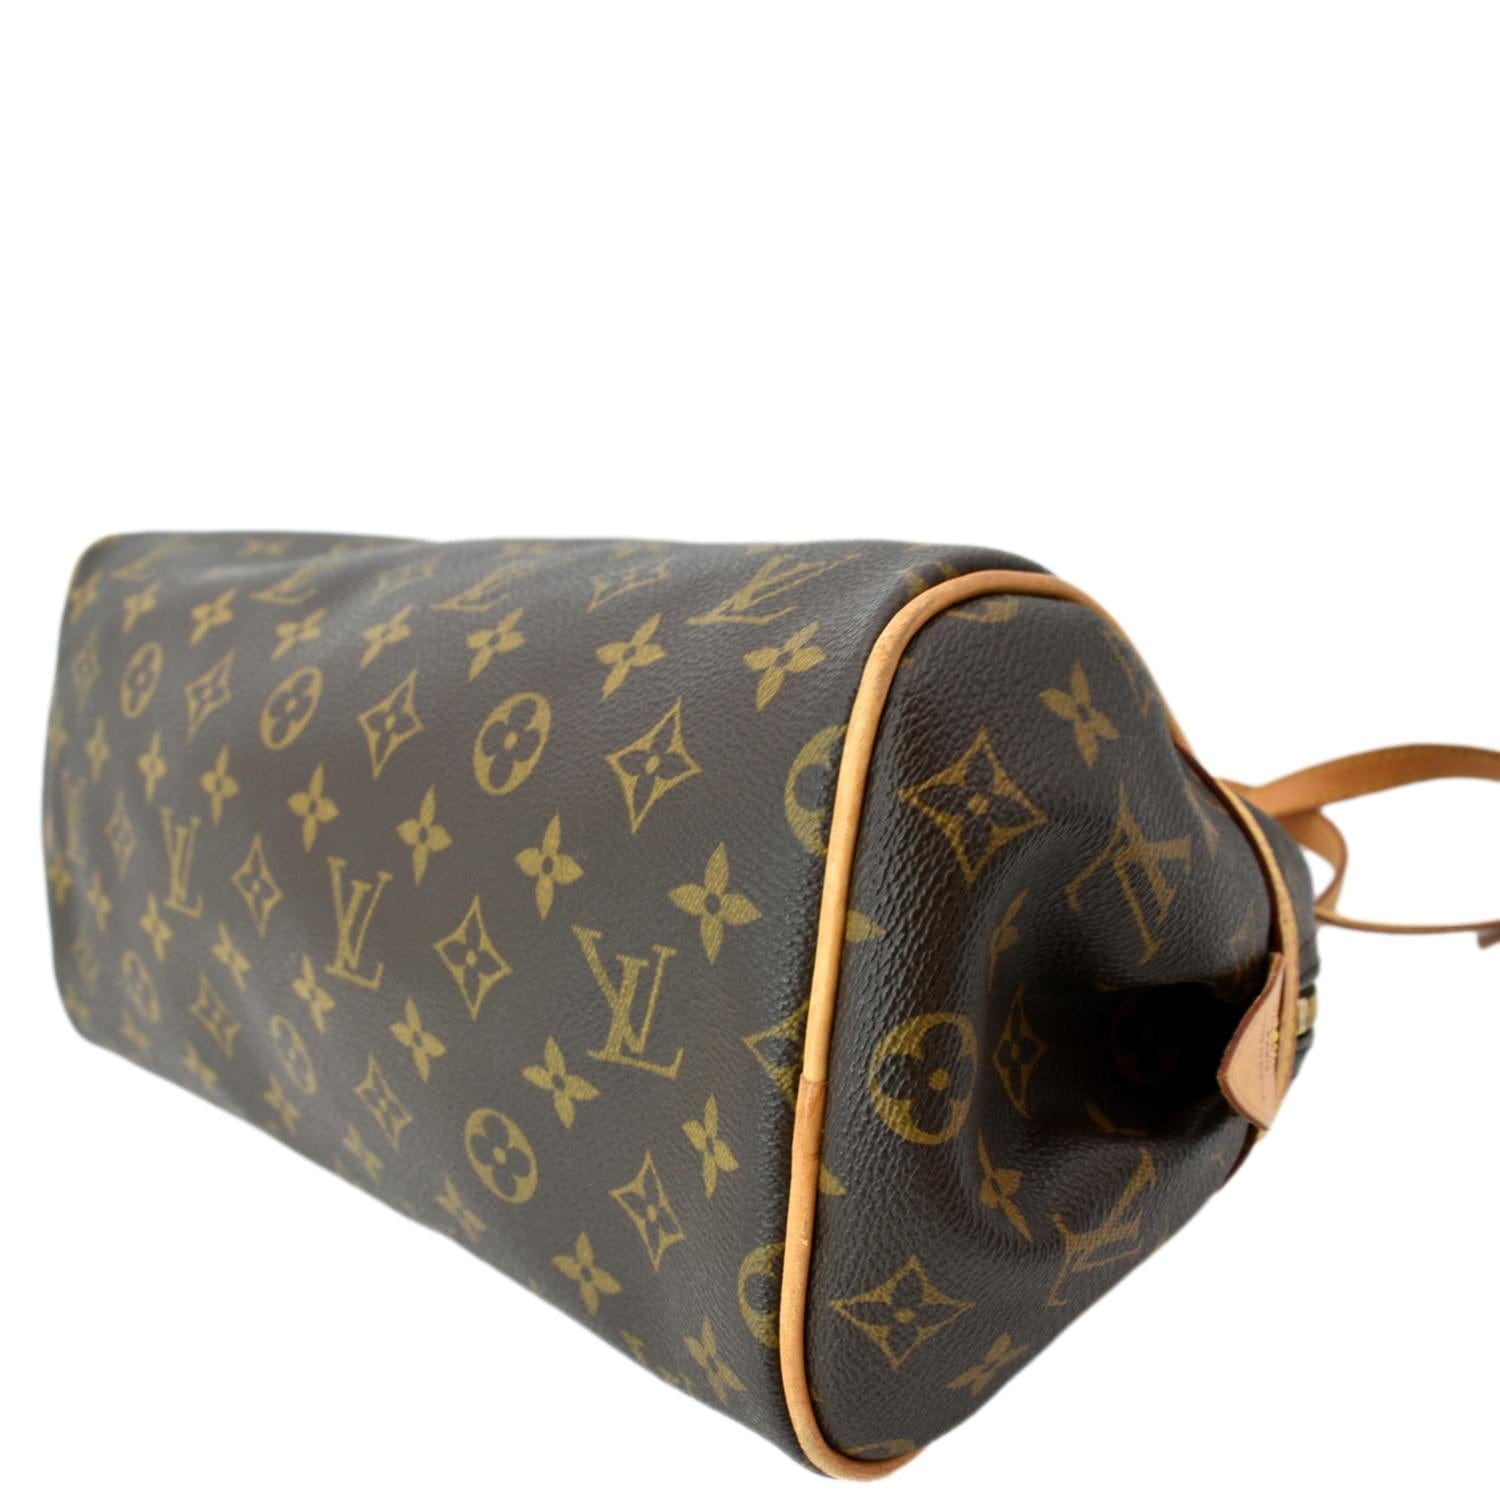 Vuitton Handbag Flap Bag - 176 For Sale on 1stDibs